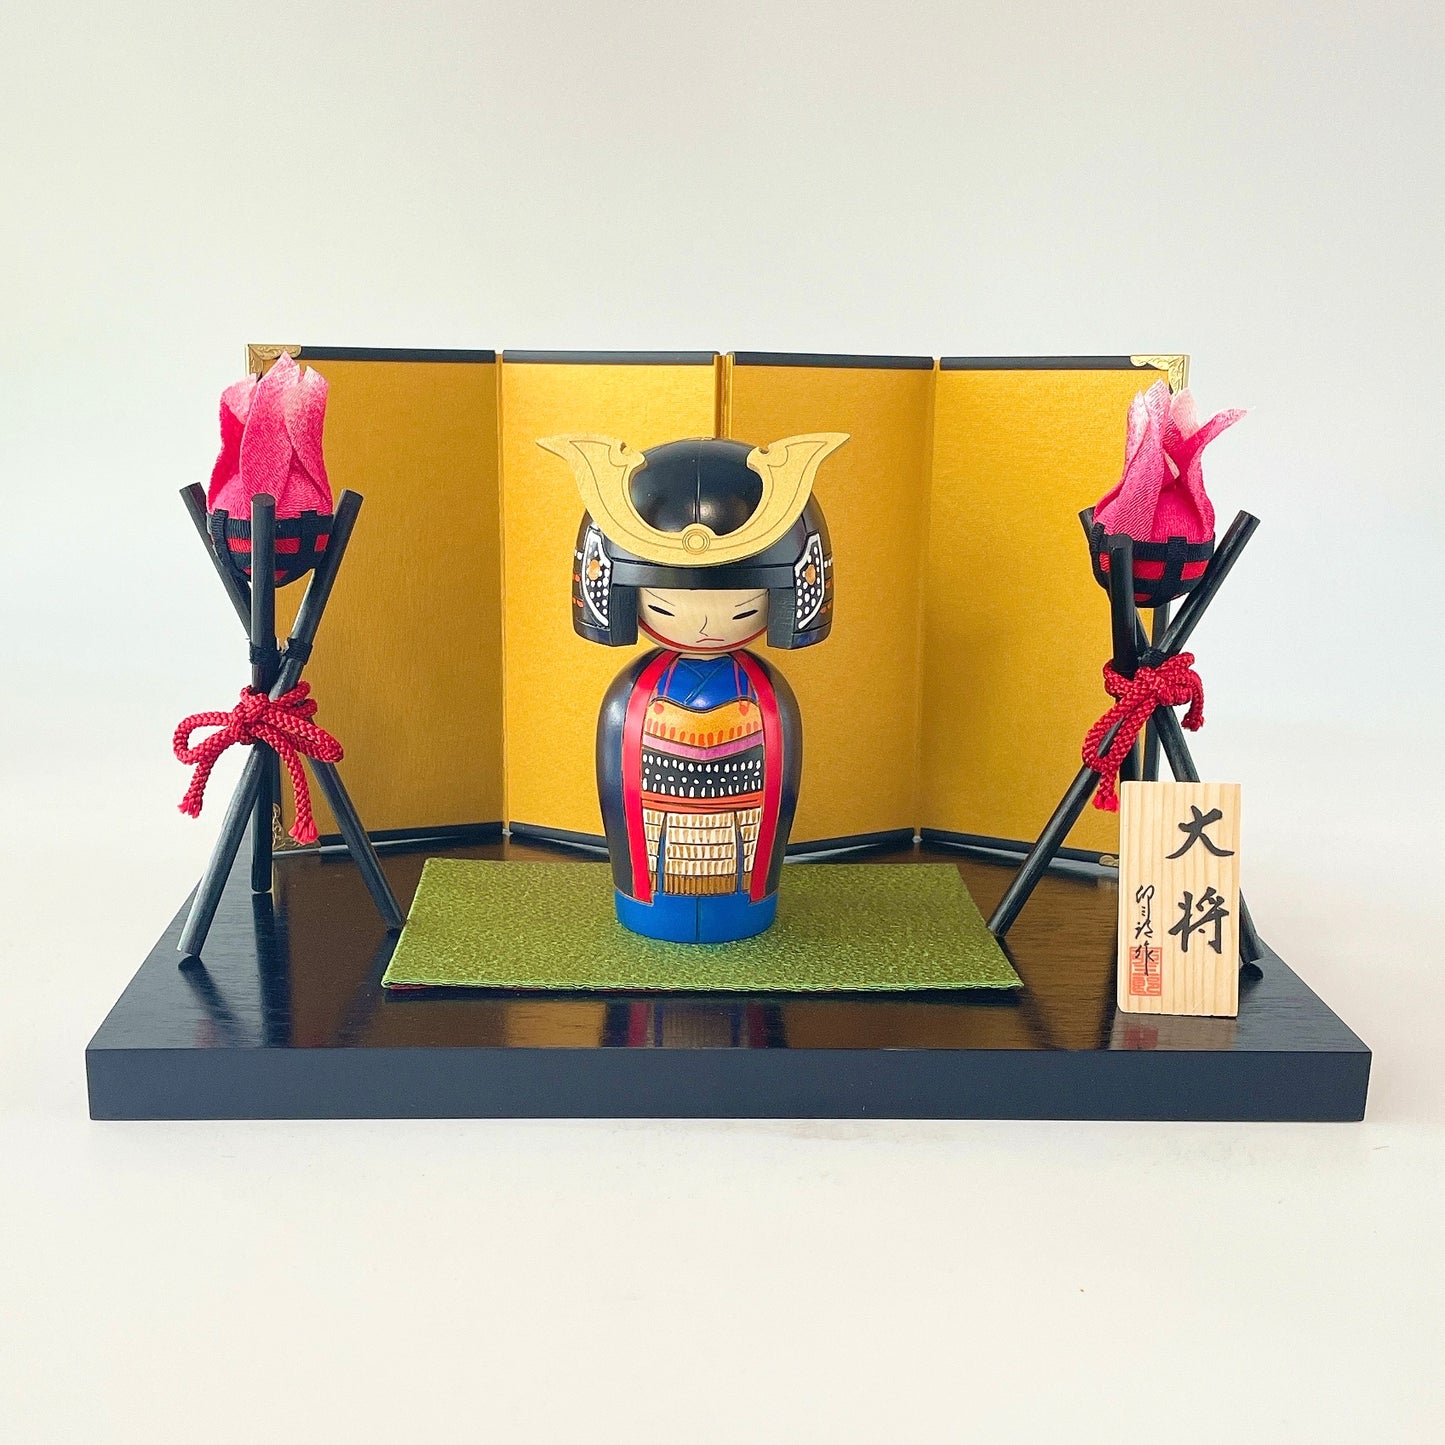 Taishō (Samurai general) / Bonfire Set